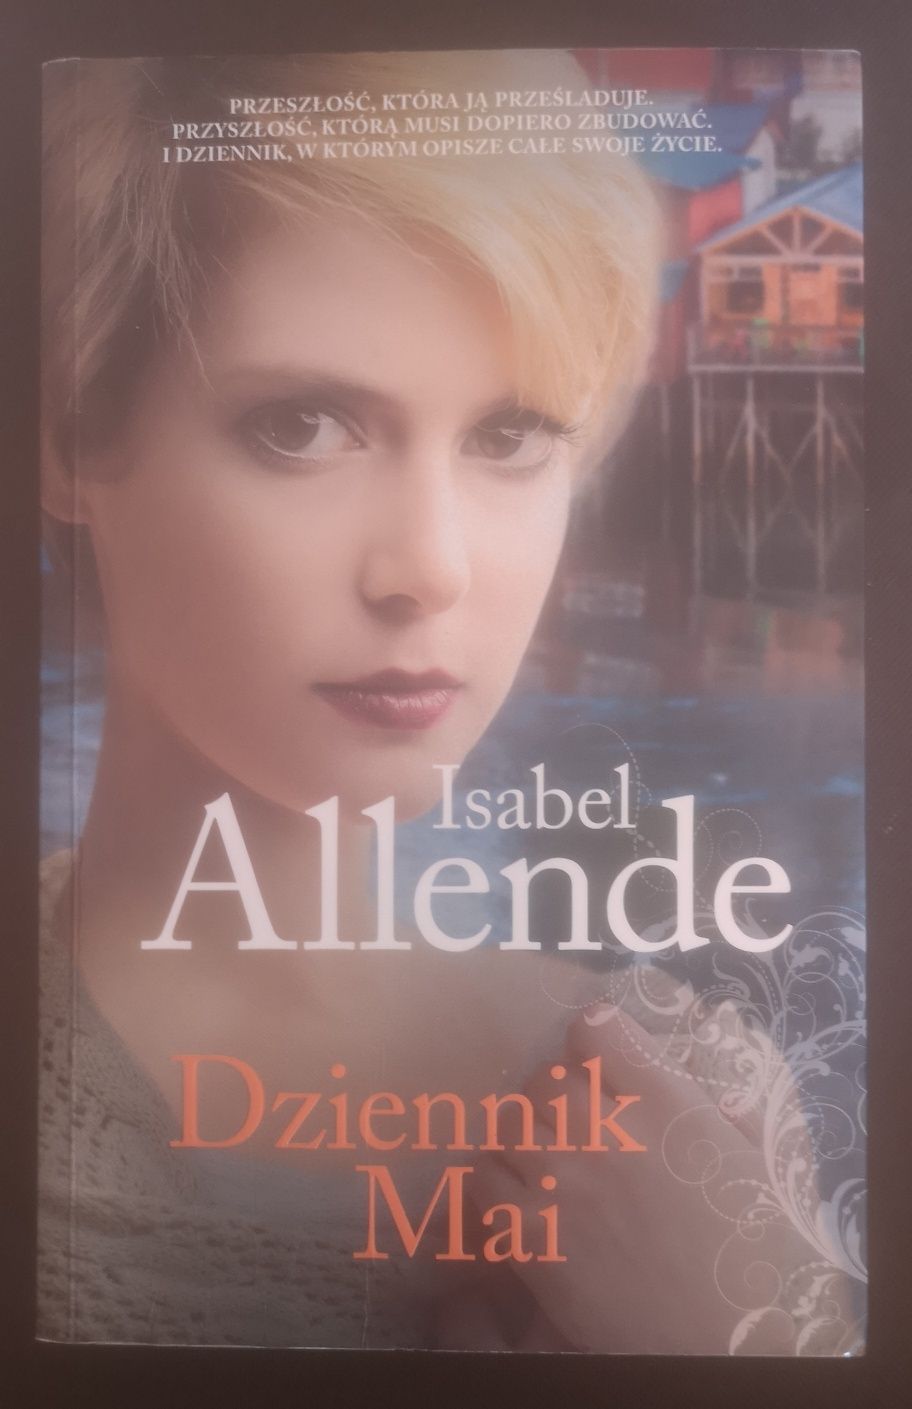 Isabel Allende "Dziennik Mai"